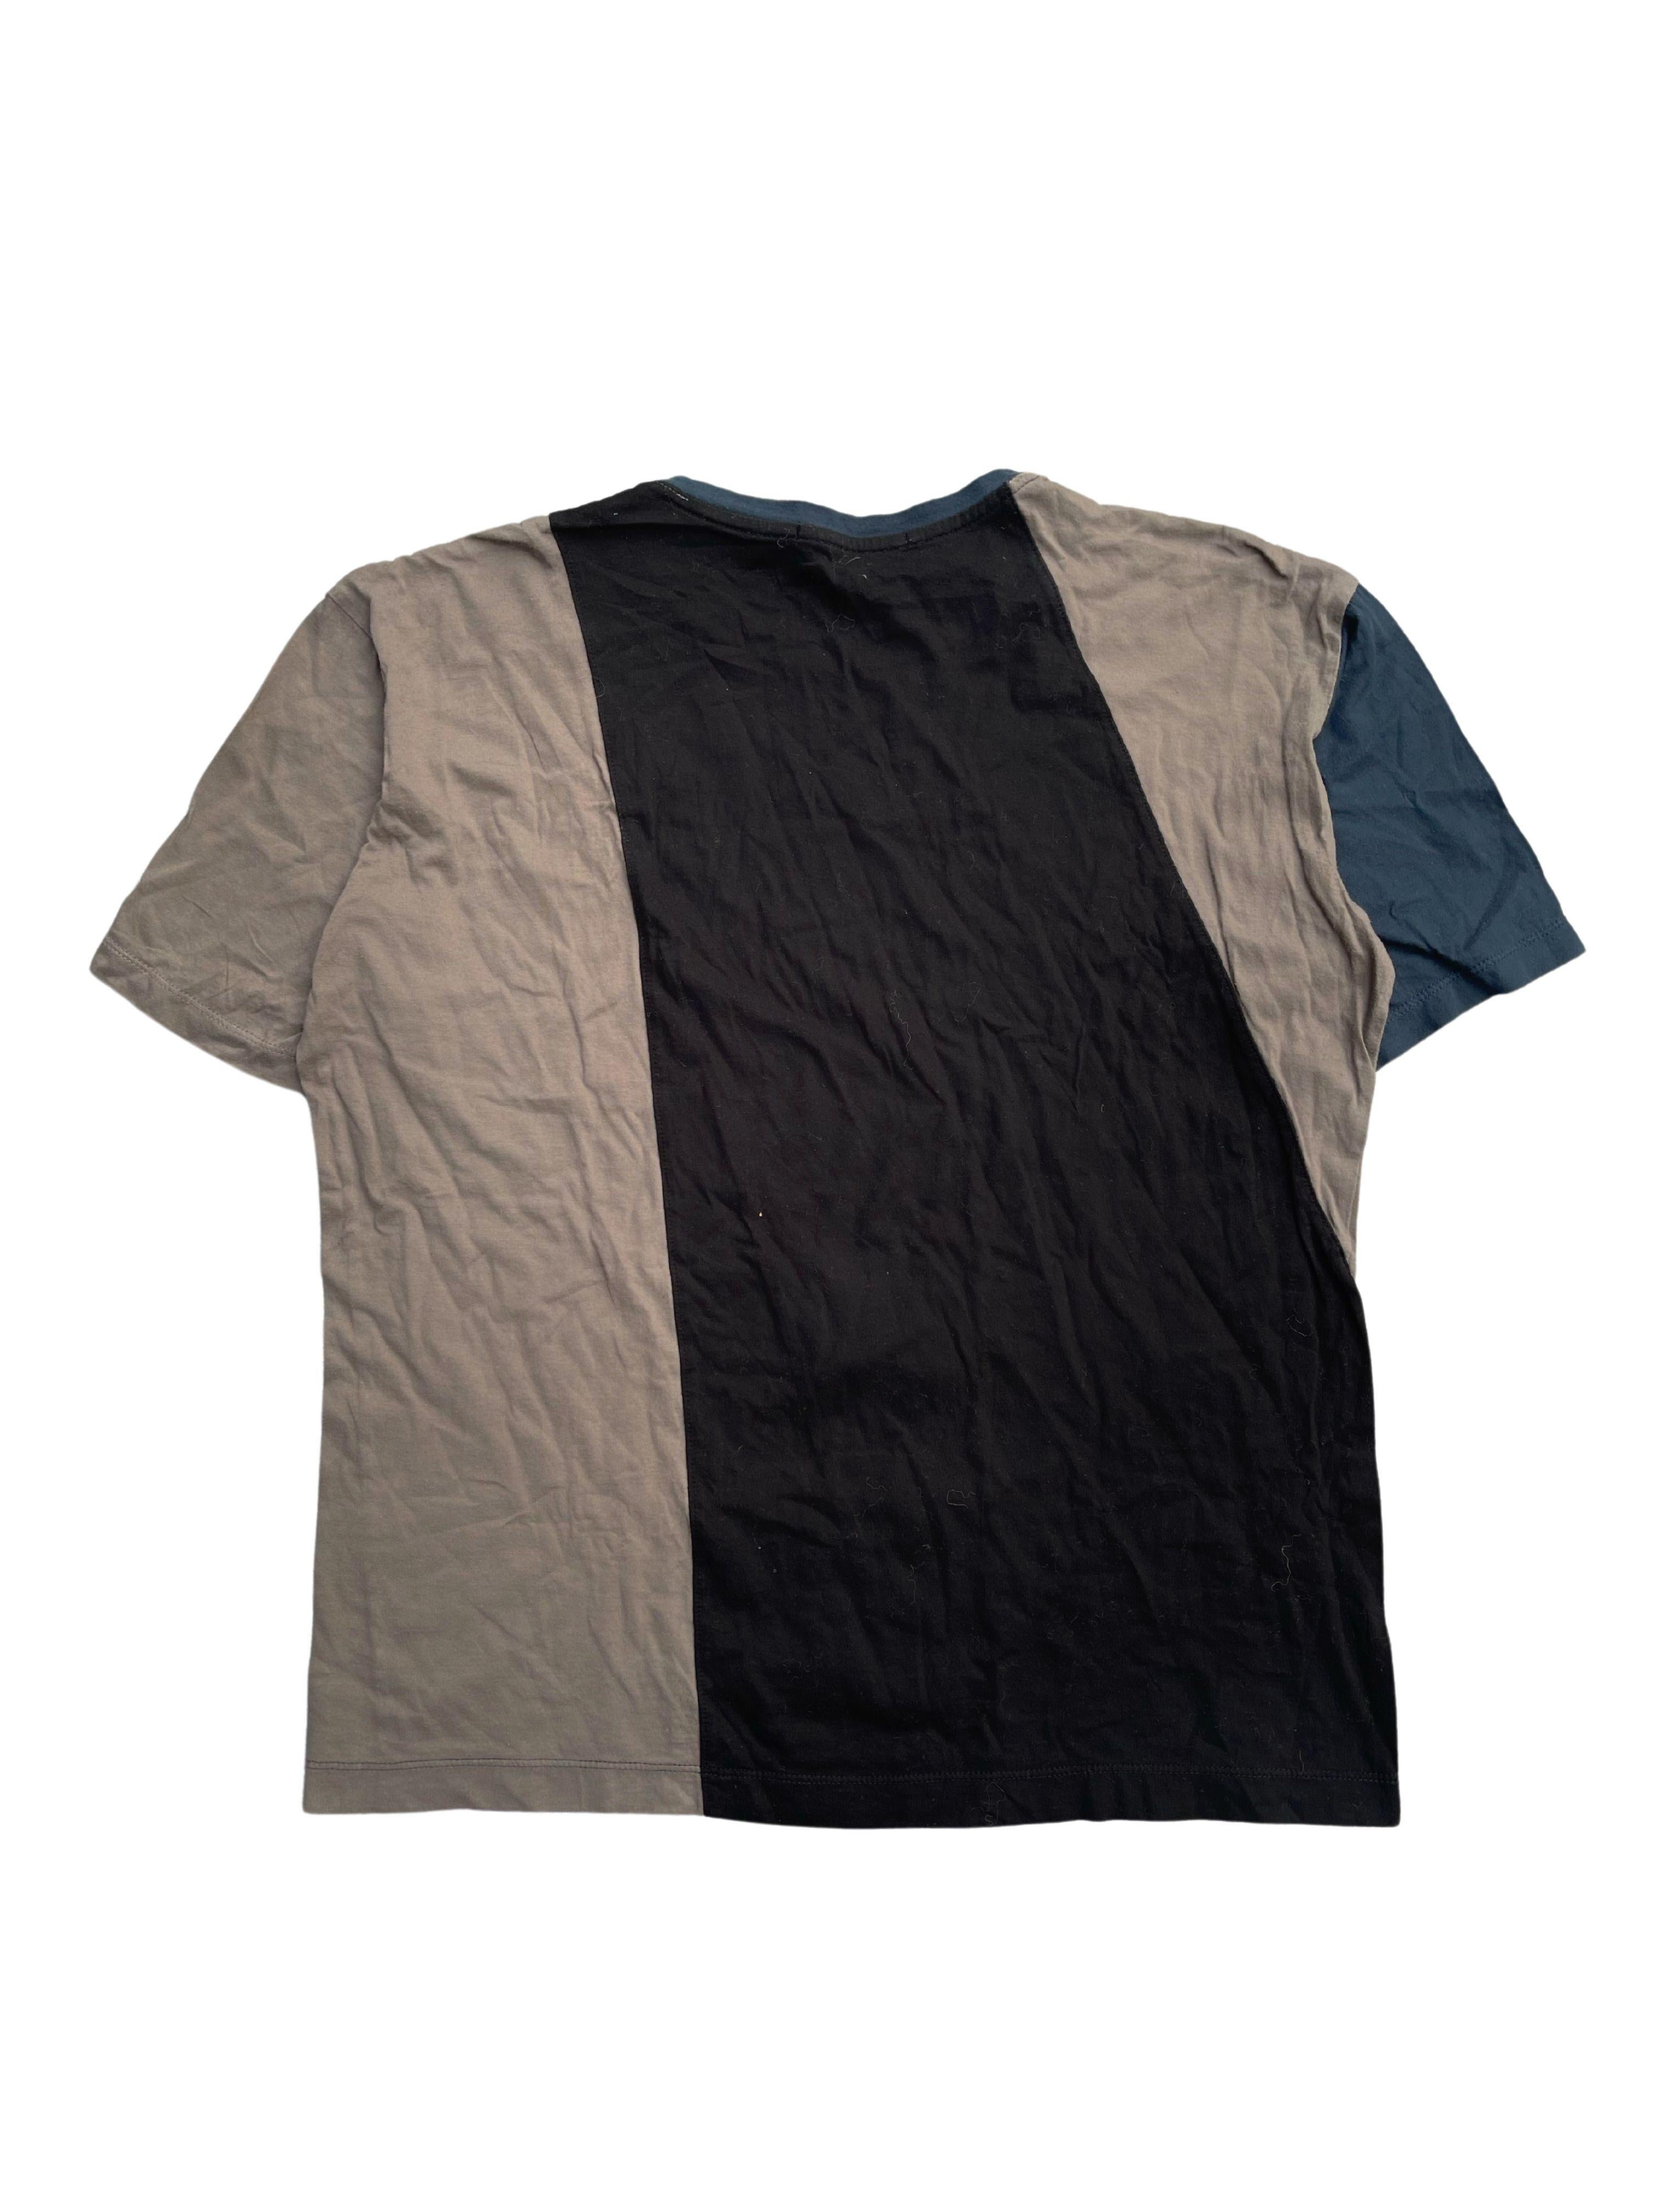 Gray Issey Miyake Geometry T-Shirt, Fall Winter 2004